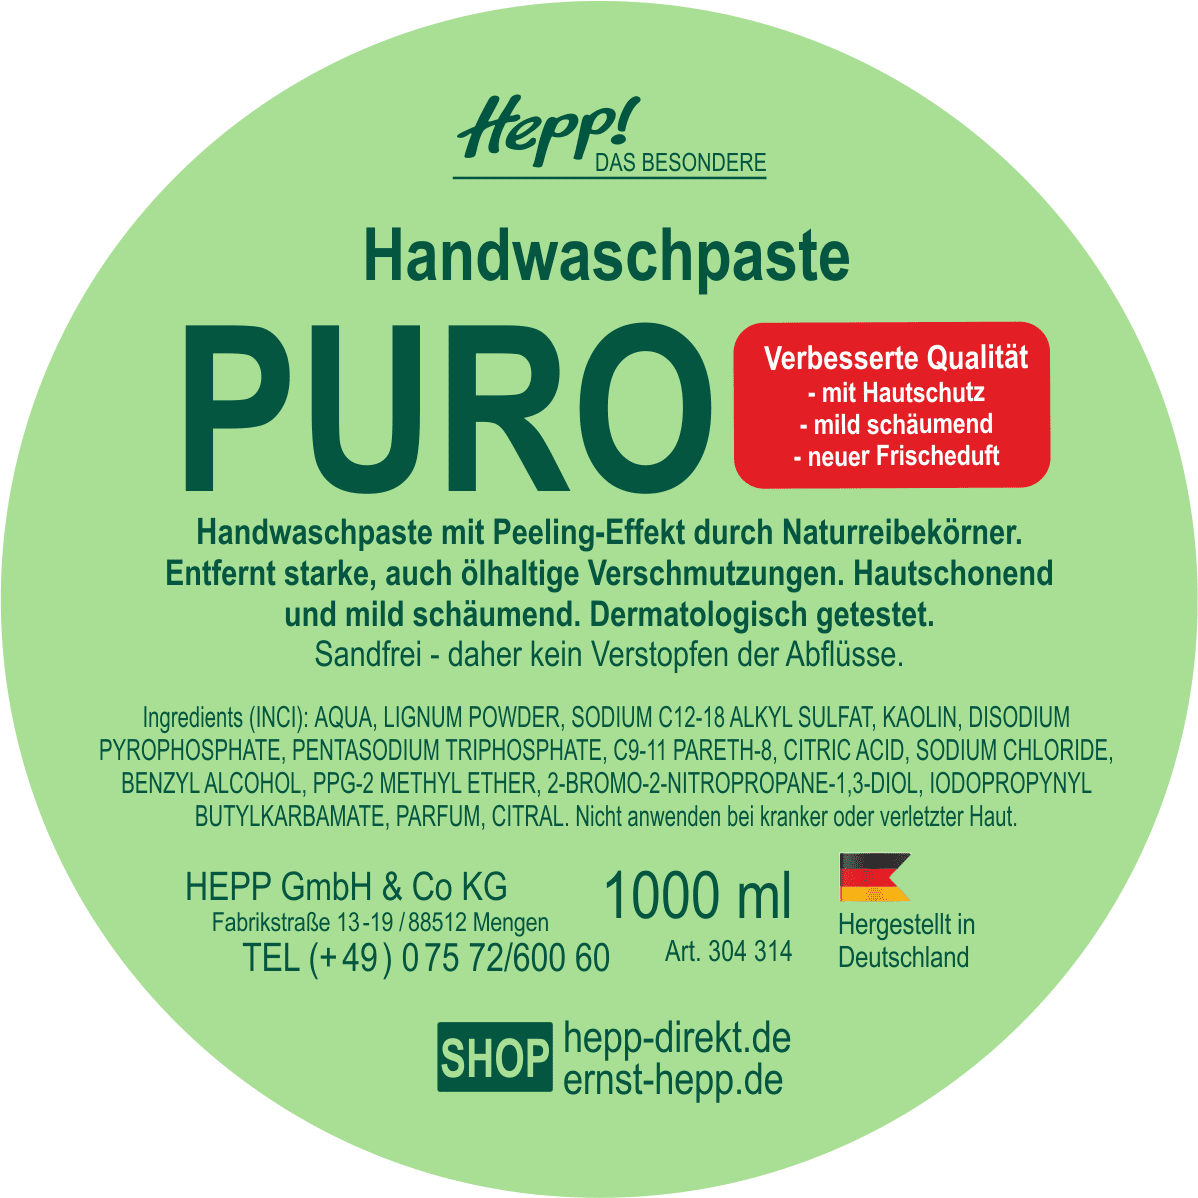 Handwaschpaste Puro (3Liter)